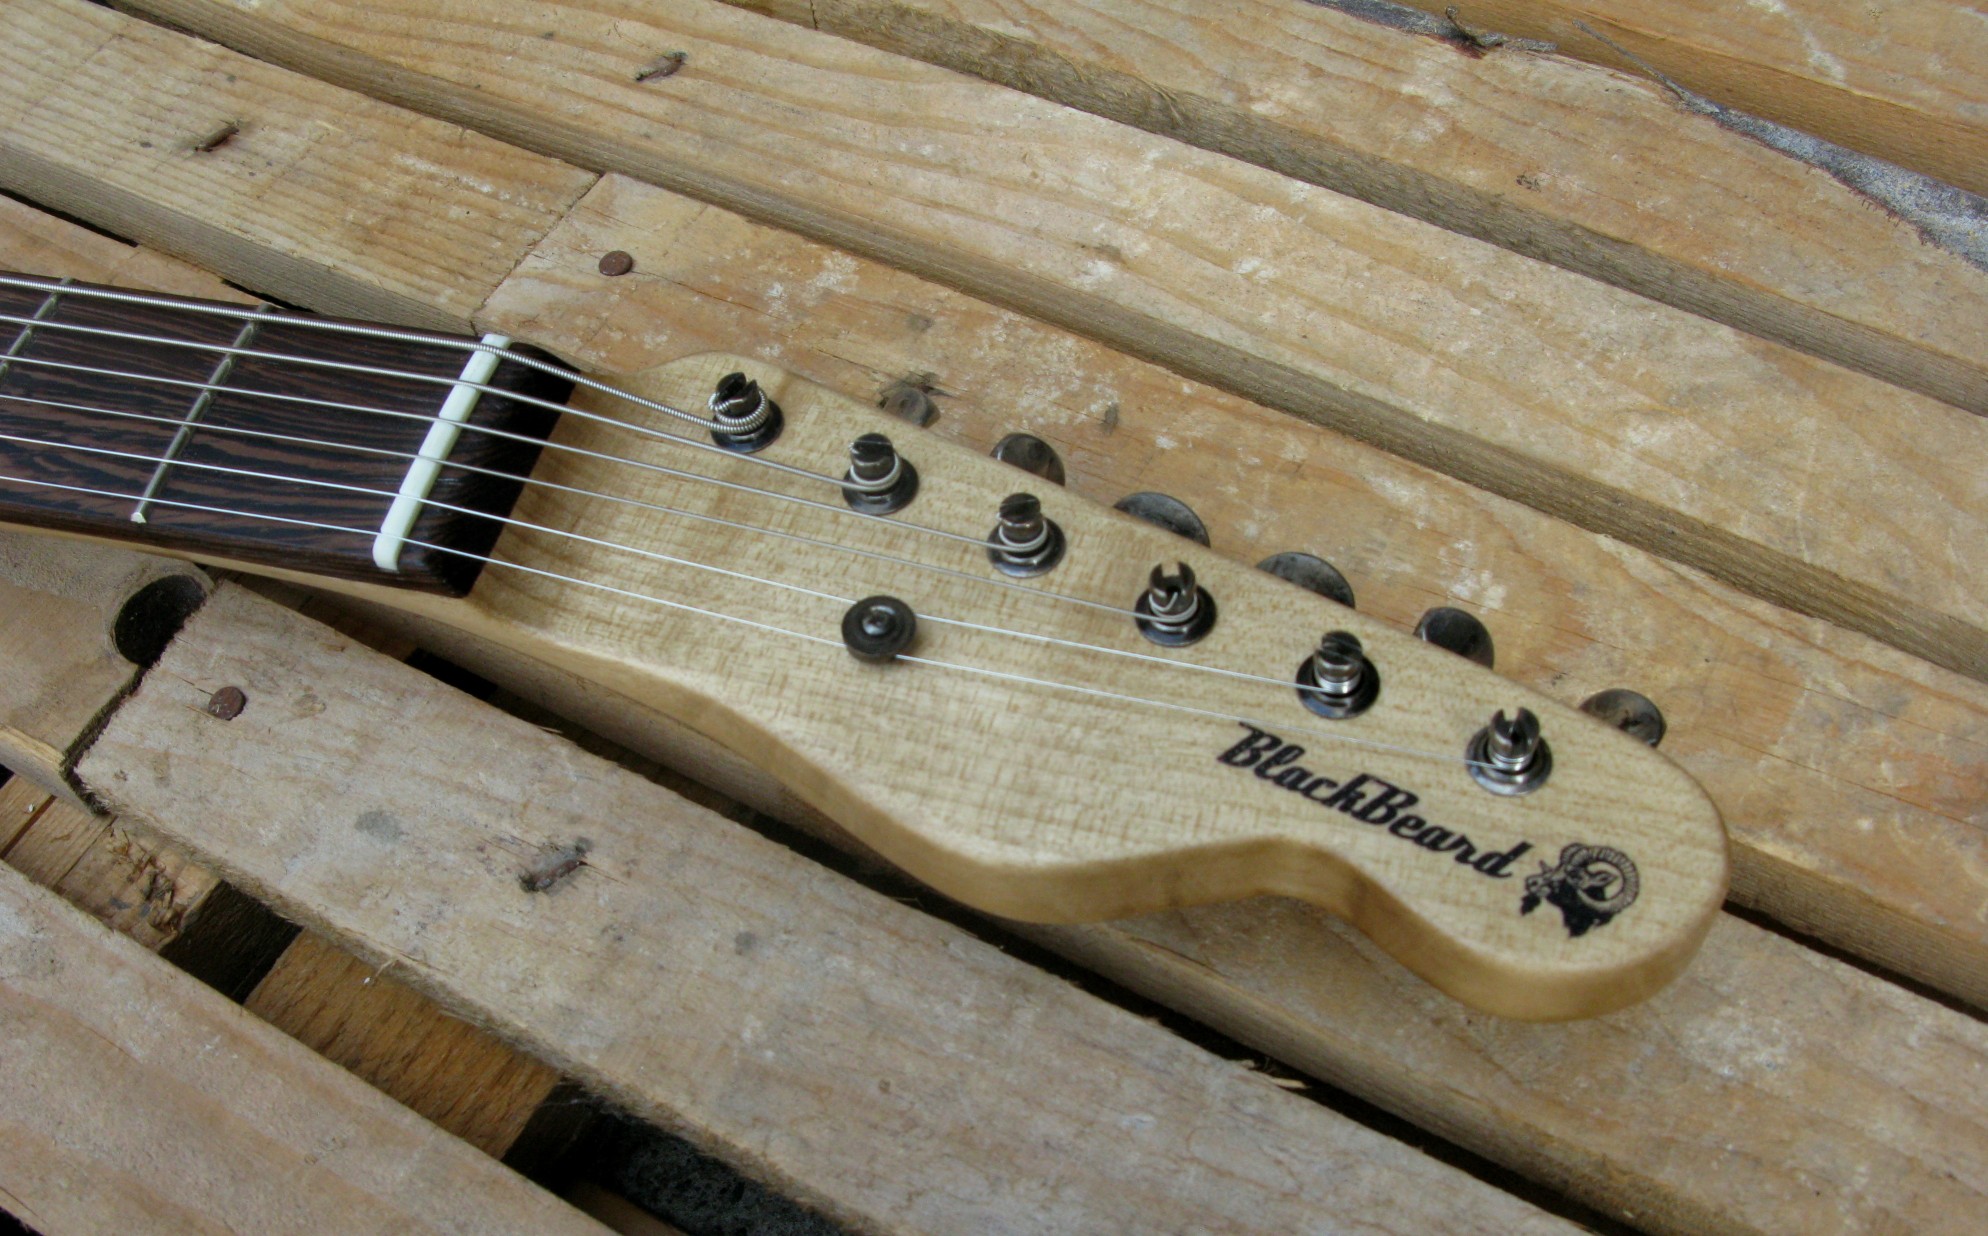 Paletta in acero di una chitarra elettrica baritono modello Telecaster con top ricavato da una vecchia cassetta di polvere da sparo